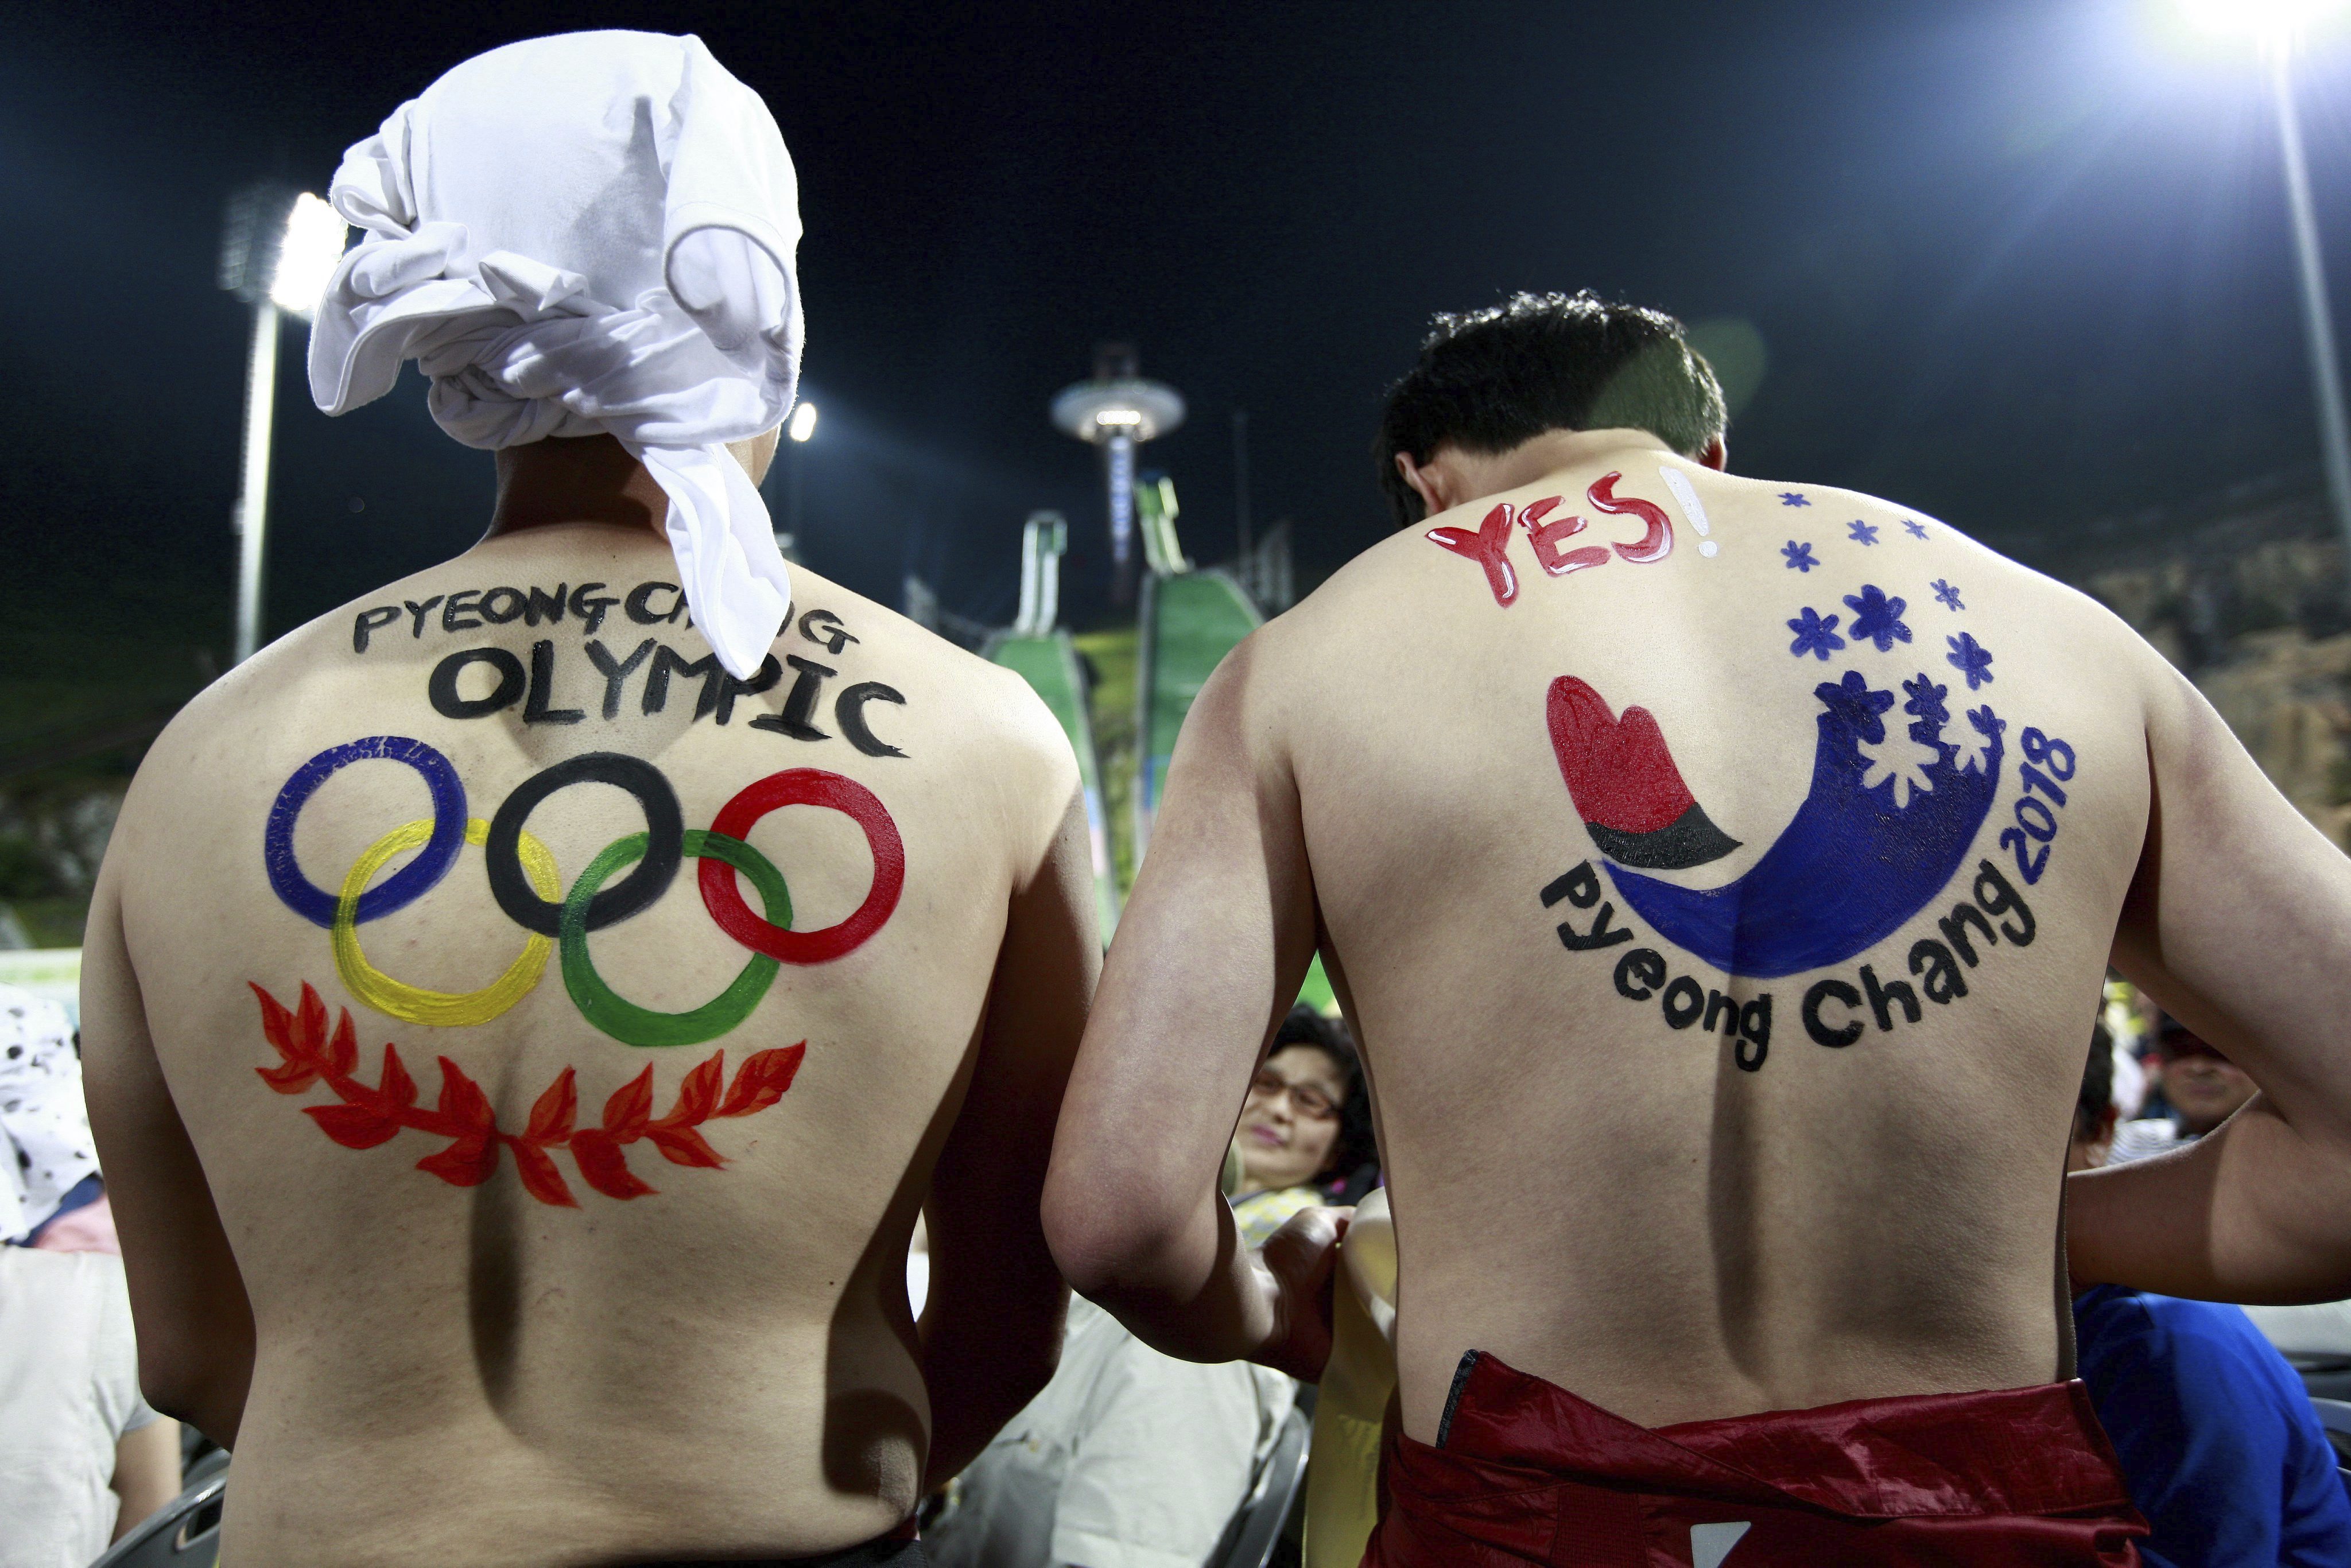 Una comisión especial del Comité Olímpico Internacional (COI) determinará si los rusos pueden usar su bandera y escuchar su himno en los juegos.